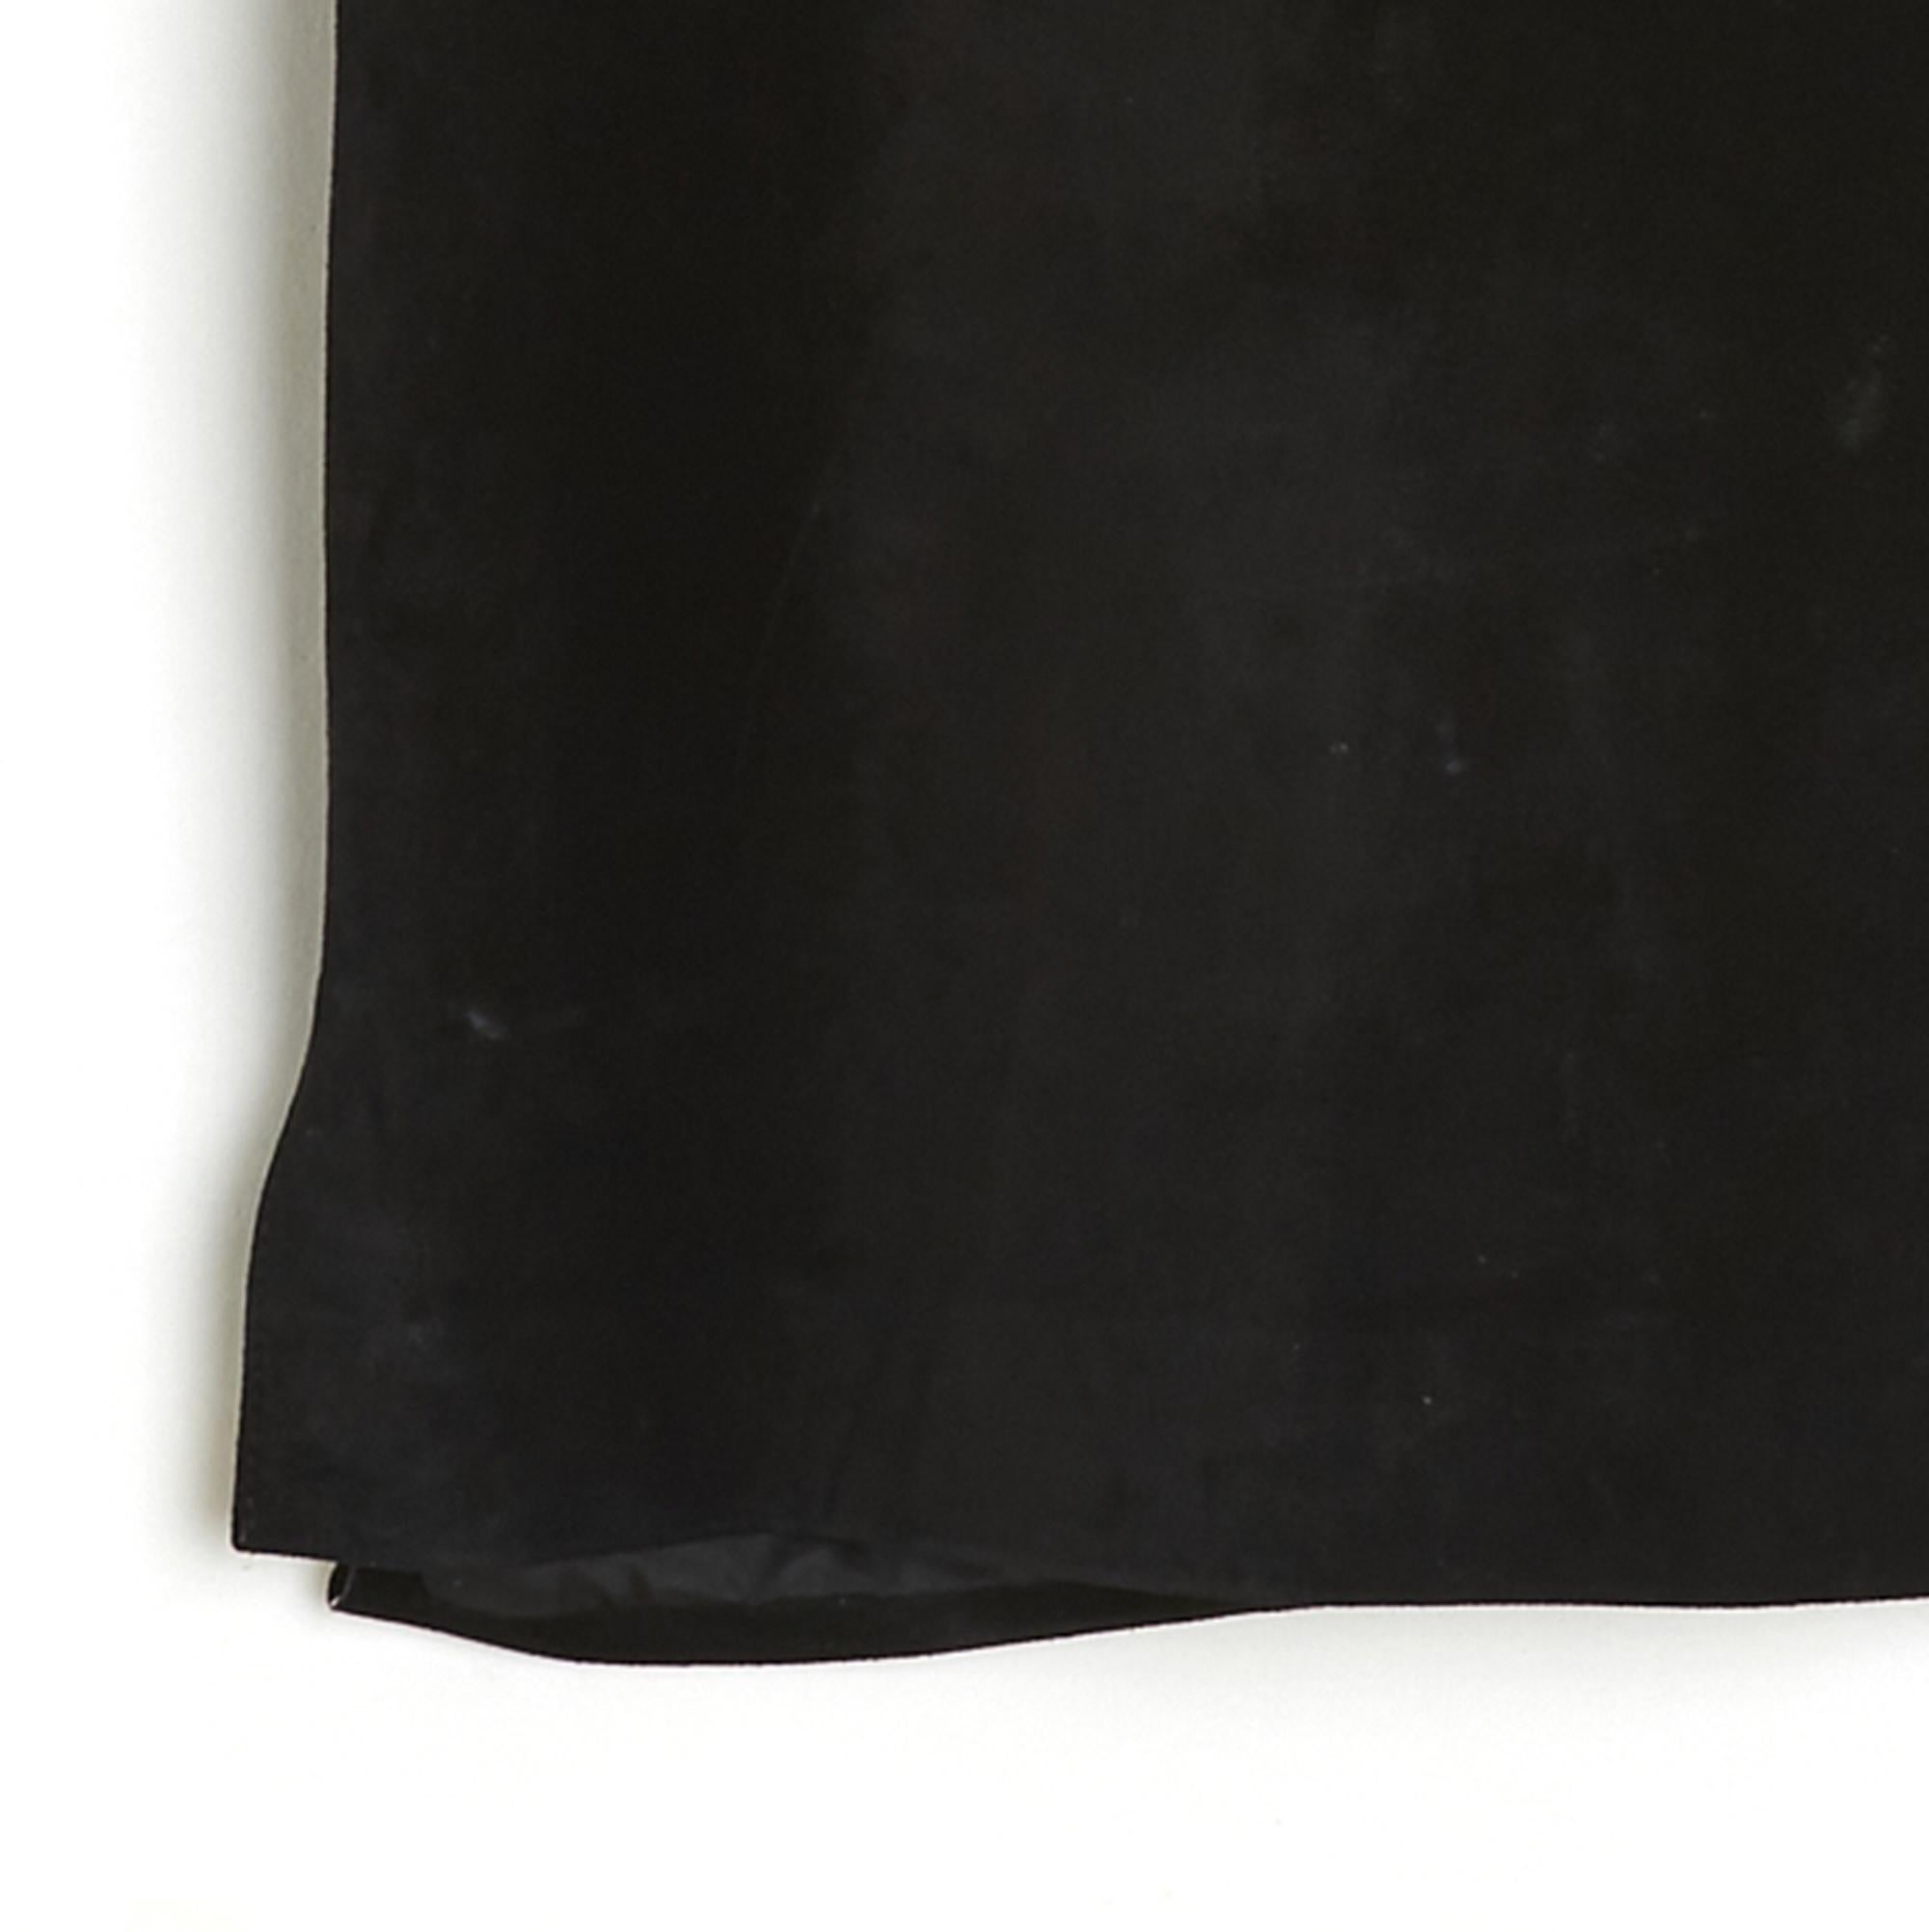 Yves Saint Laurent Oberteil aus schwarzem Wildleder, Rundhalsausschnitt, ärmellos, ganz bestickt mit einer breiten Lederkrawatte, 2 kleine Schlitze am unteren Rand des Oberteils, Reißverschluss hinten, schwarzes Canvasfutter. Größe 40FR (perfekt in